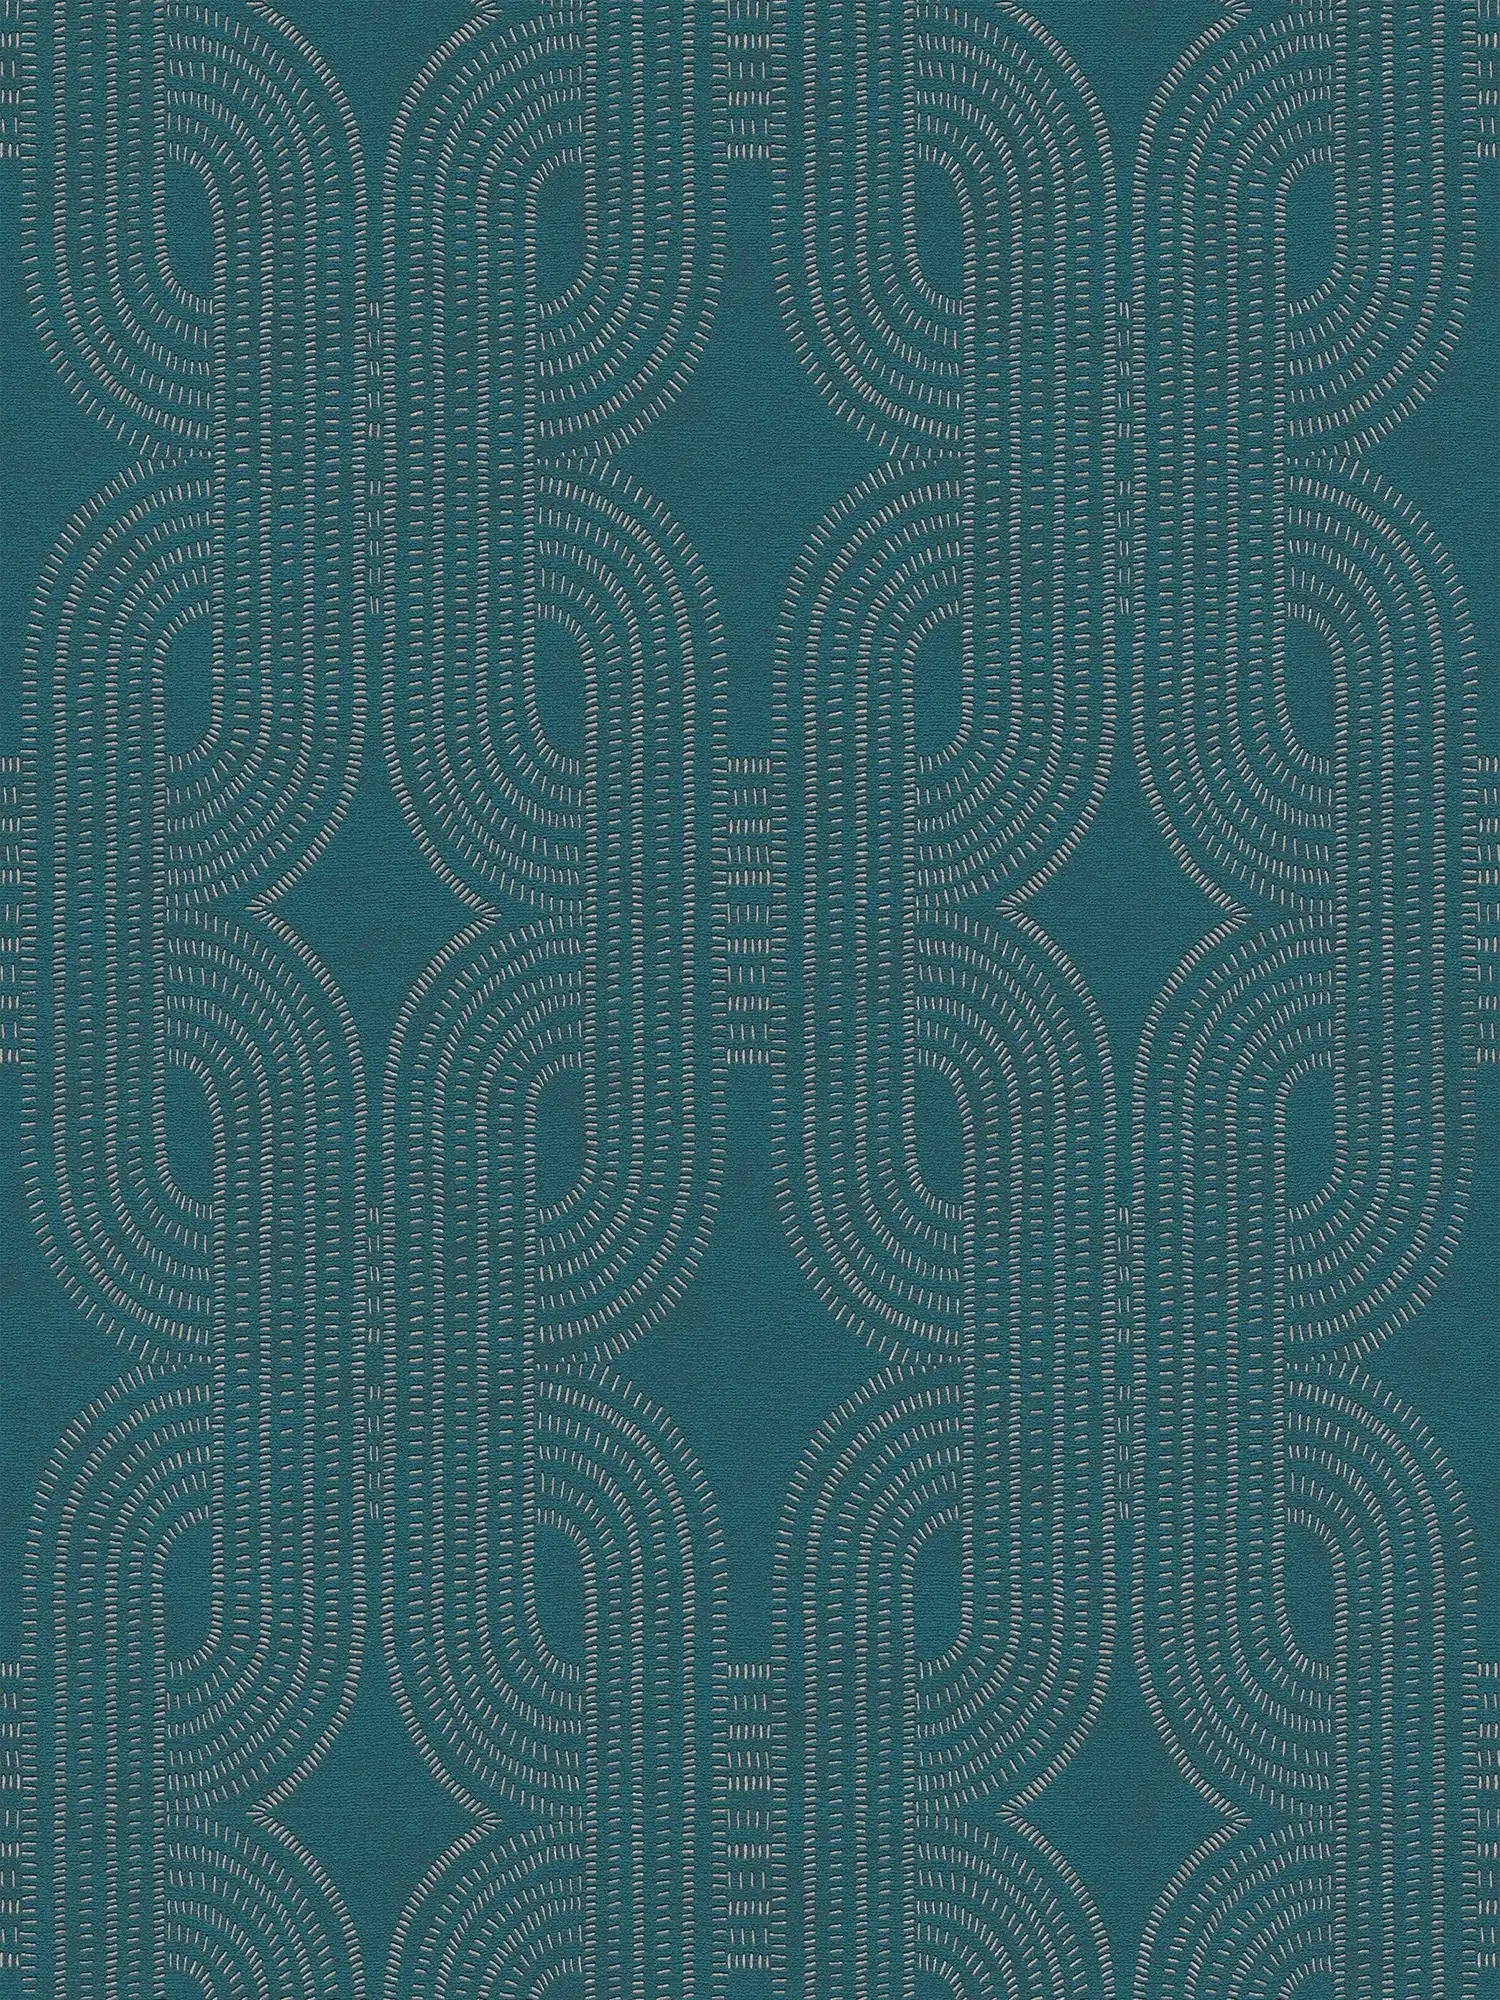         papier peint en papier intissé avec motif graphique abstrait rétro - bleu, vert, beige
    